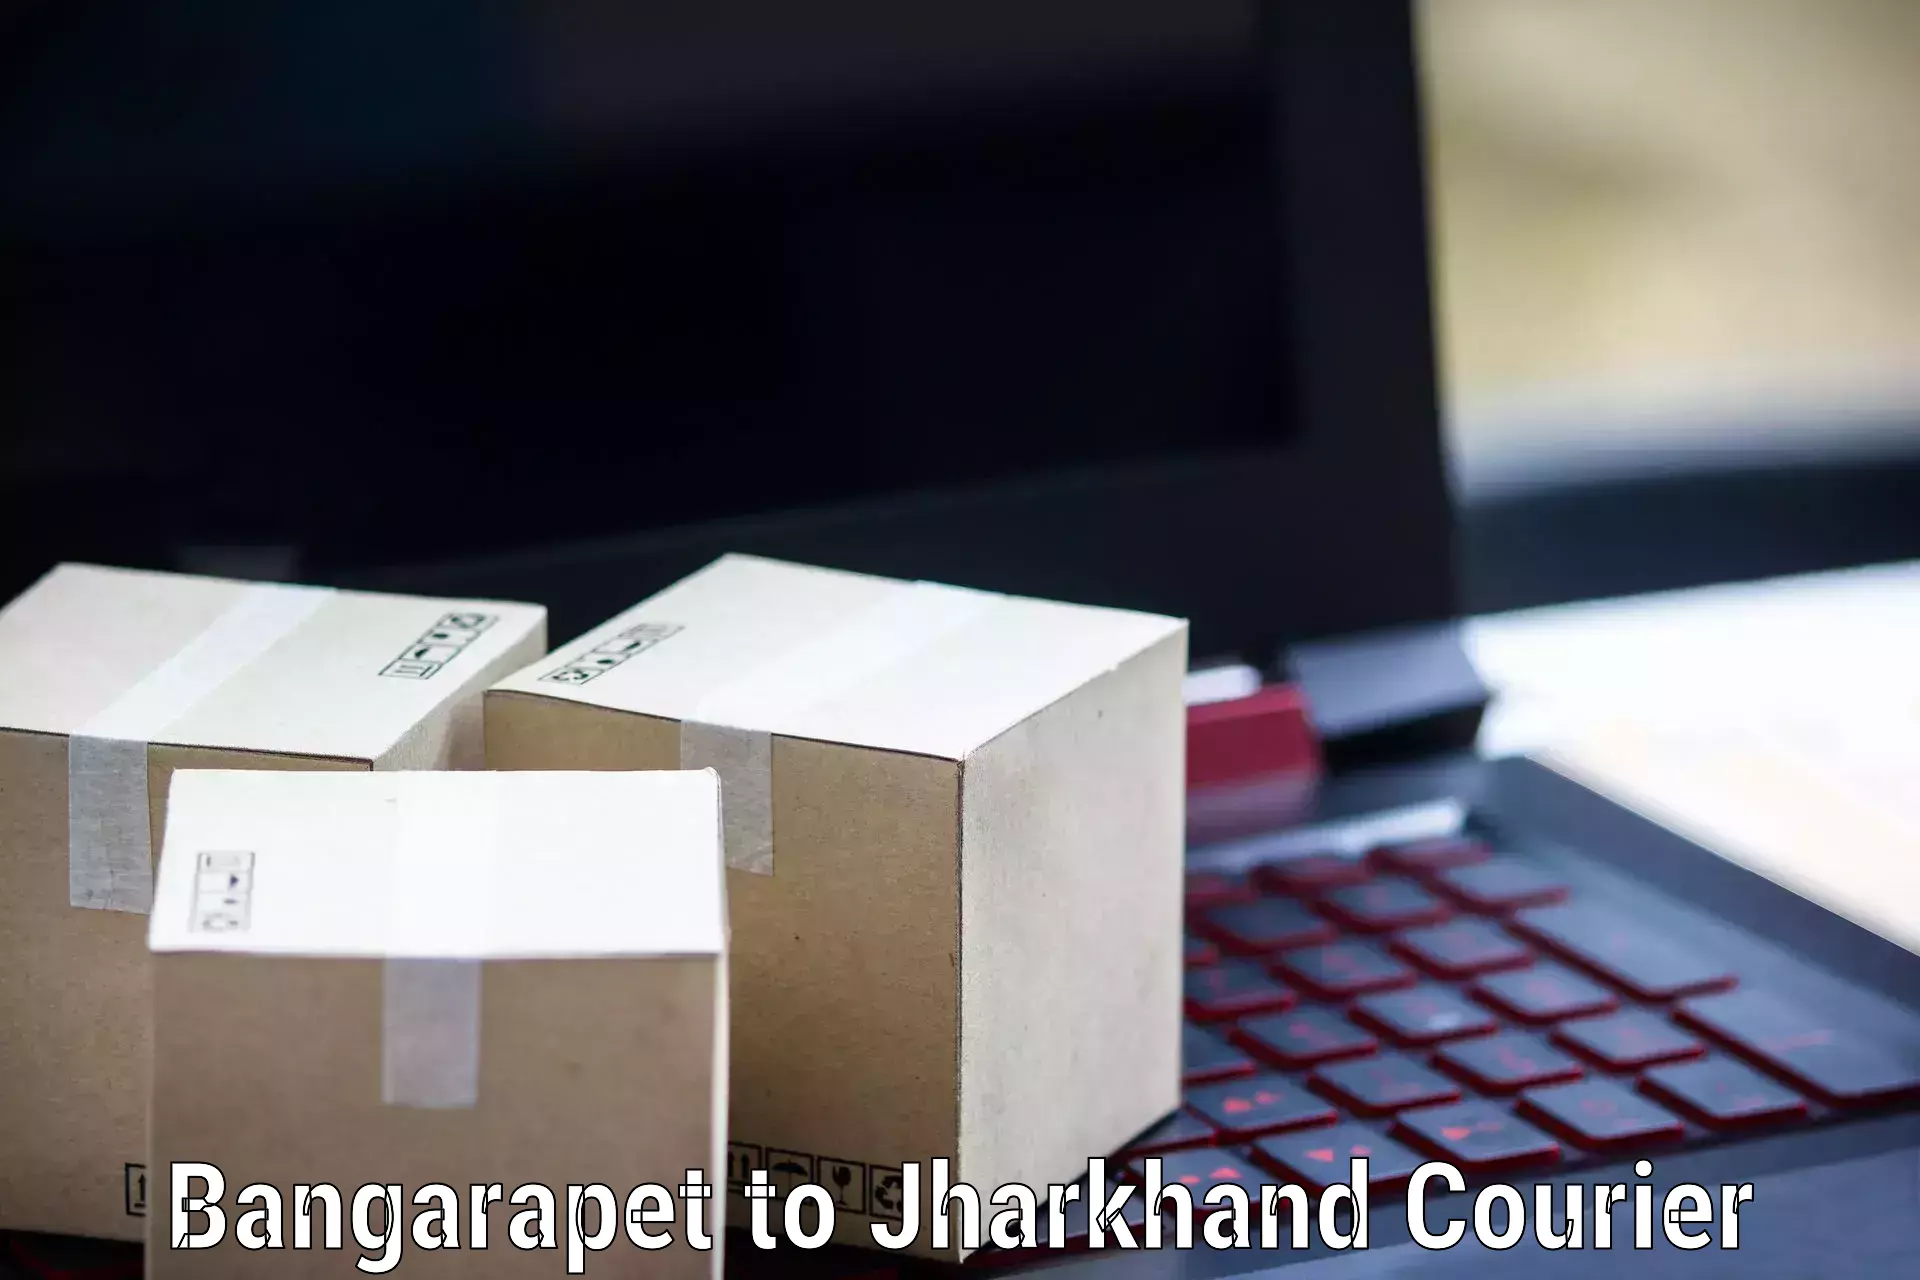 Modern delivery methods Bangarapet to IIIT Ranchi